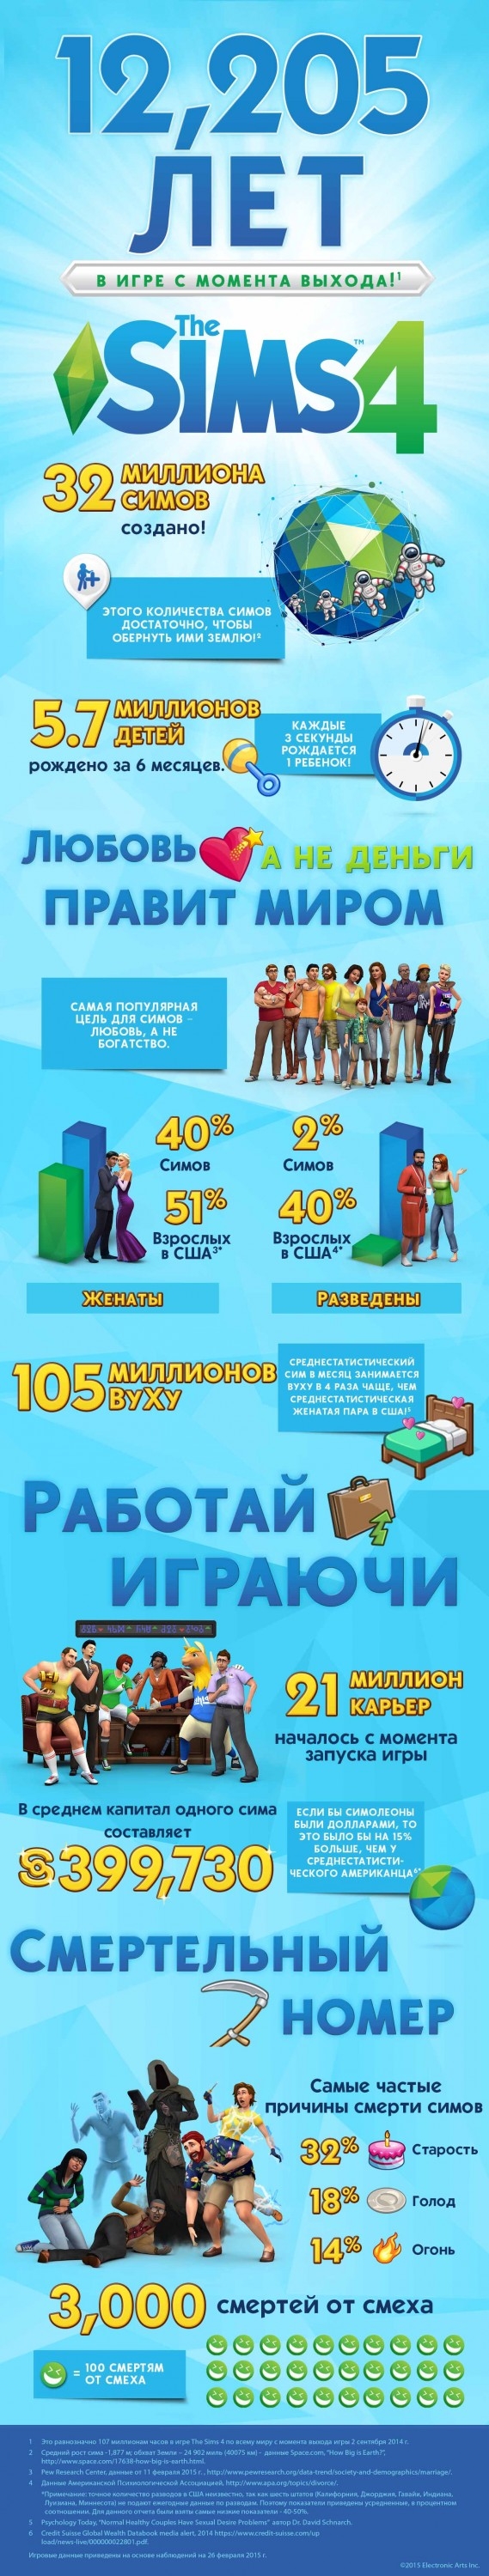 Занимательные факты The Sims 4